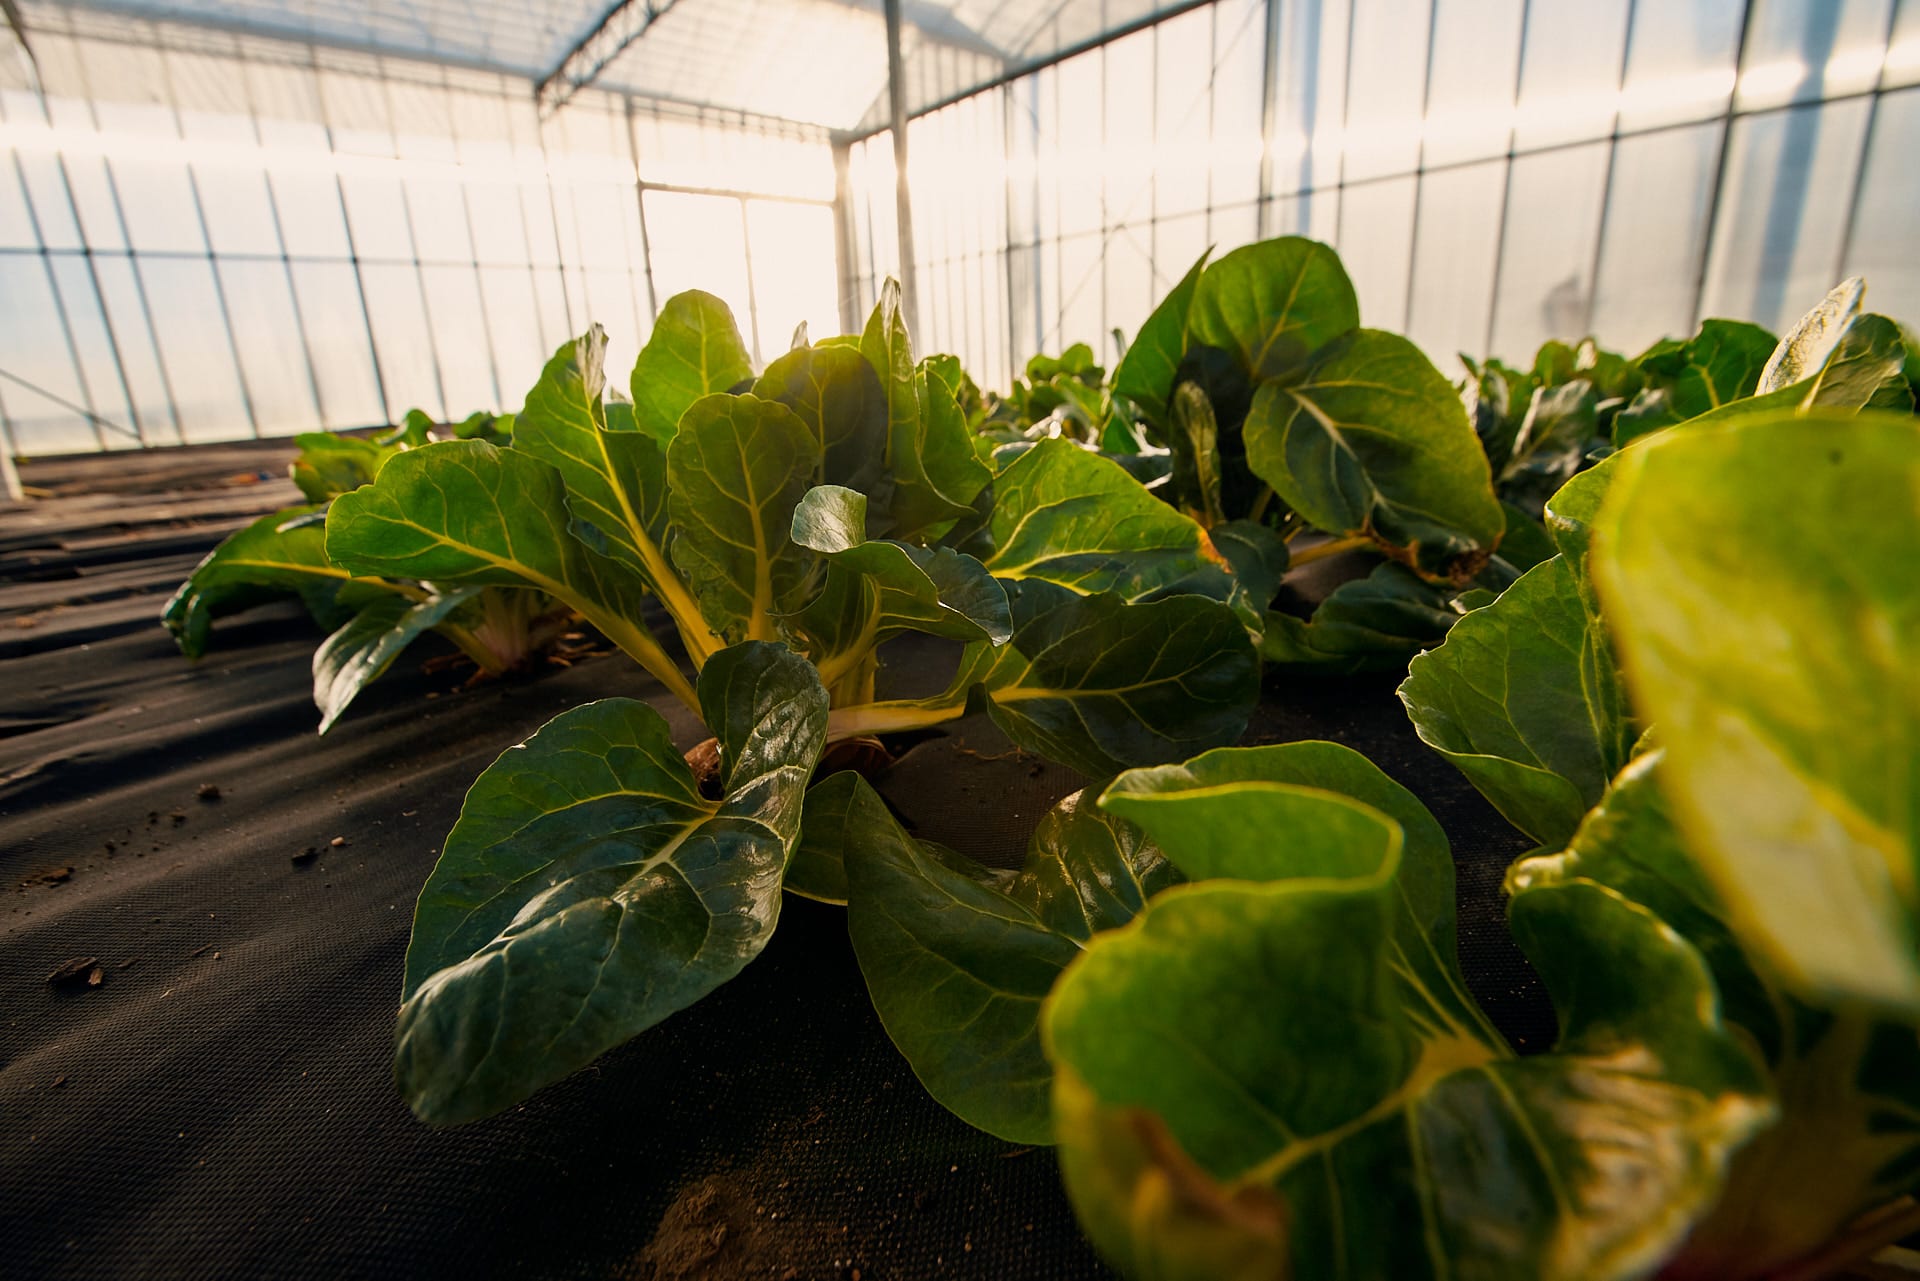 Ve skleníku se pěstují další druhy zeleninyR